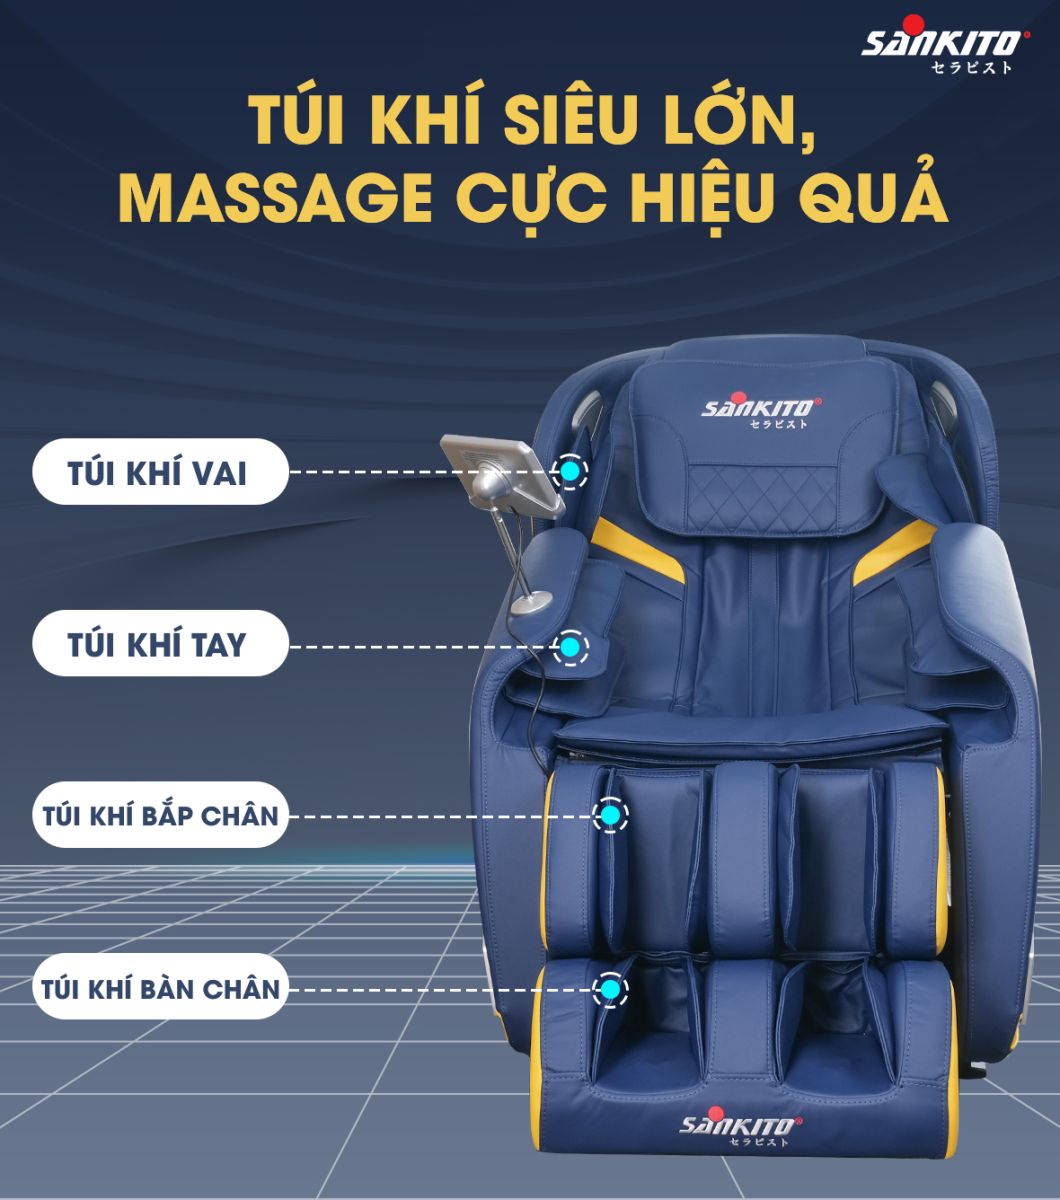 Ghế massage Sankito S-40 Túi khí siêu lớn, massage cực hiệu quả